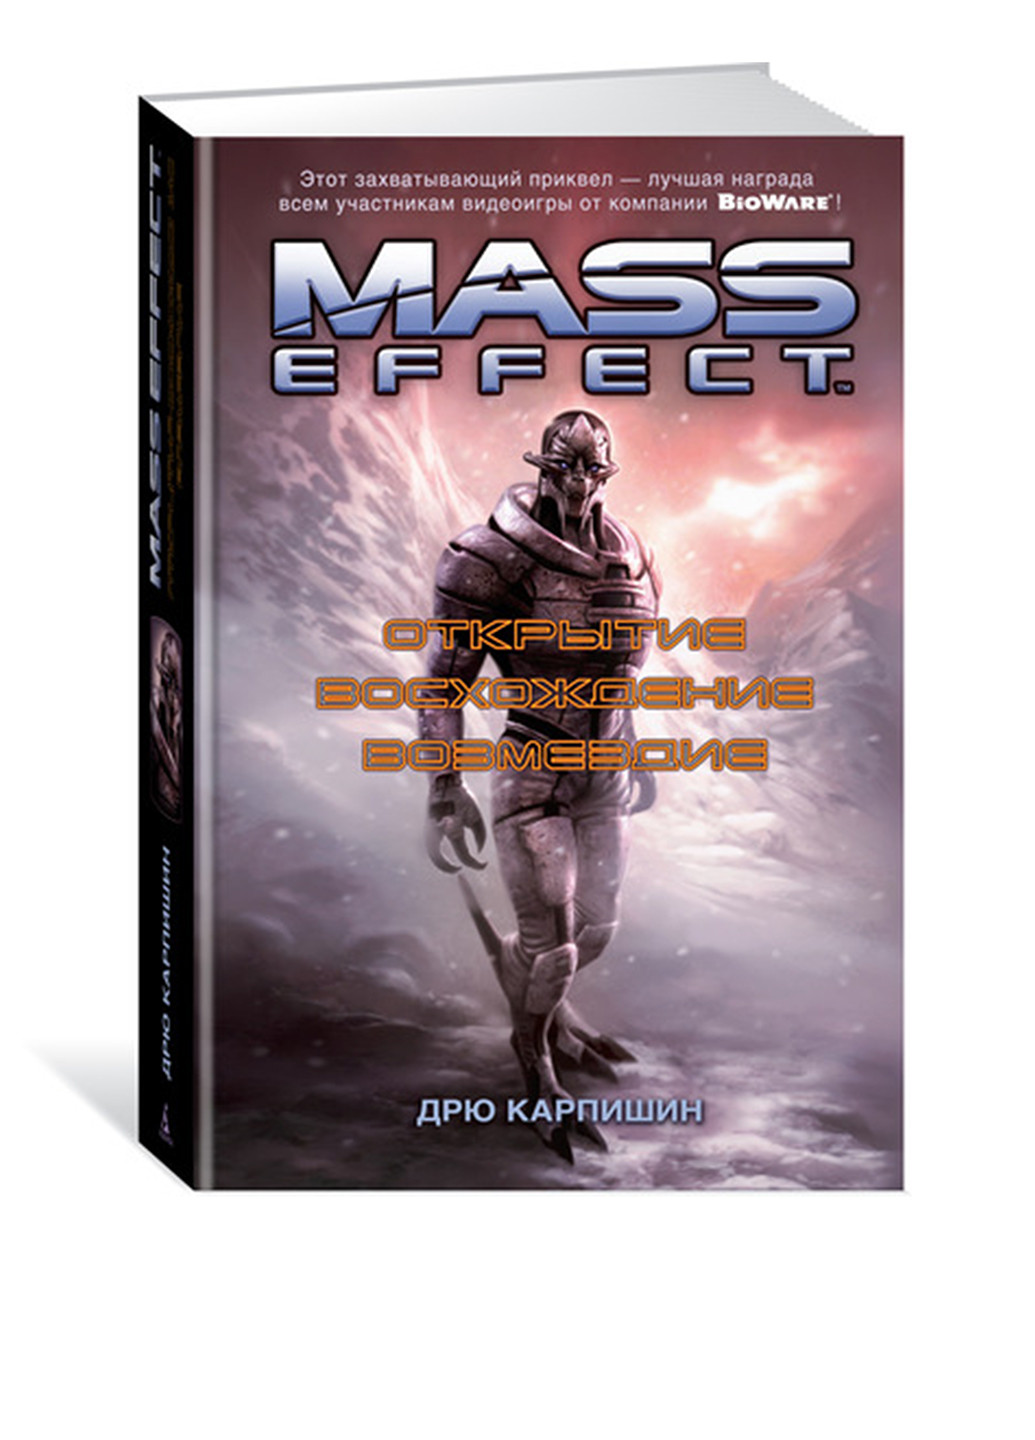 Книга "Mass Effect. Открытие. Восхождение. Возмездие" Издательство "Азбука" (32526231)